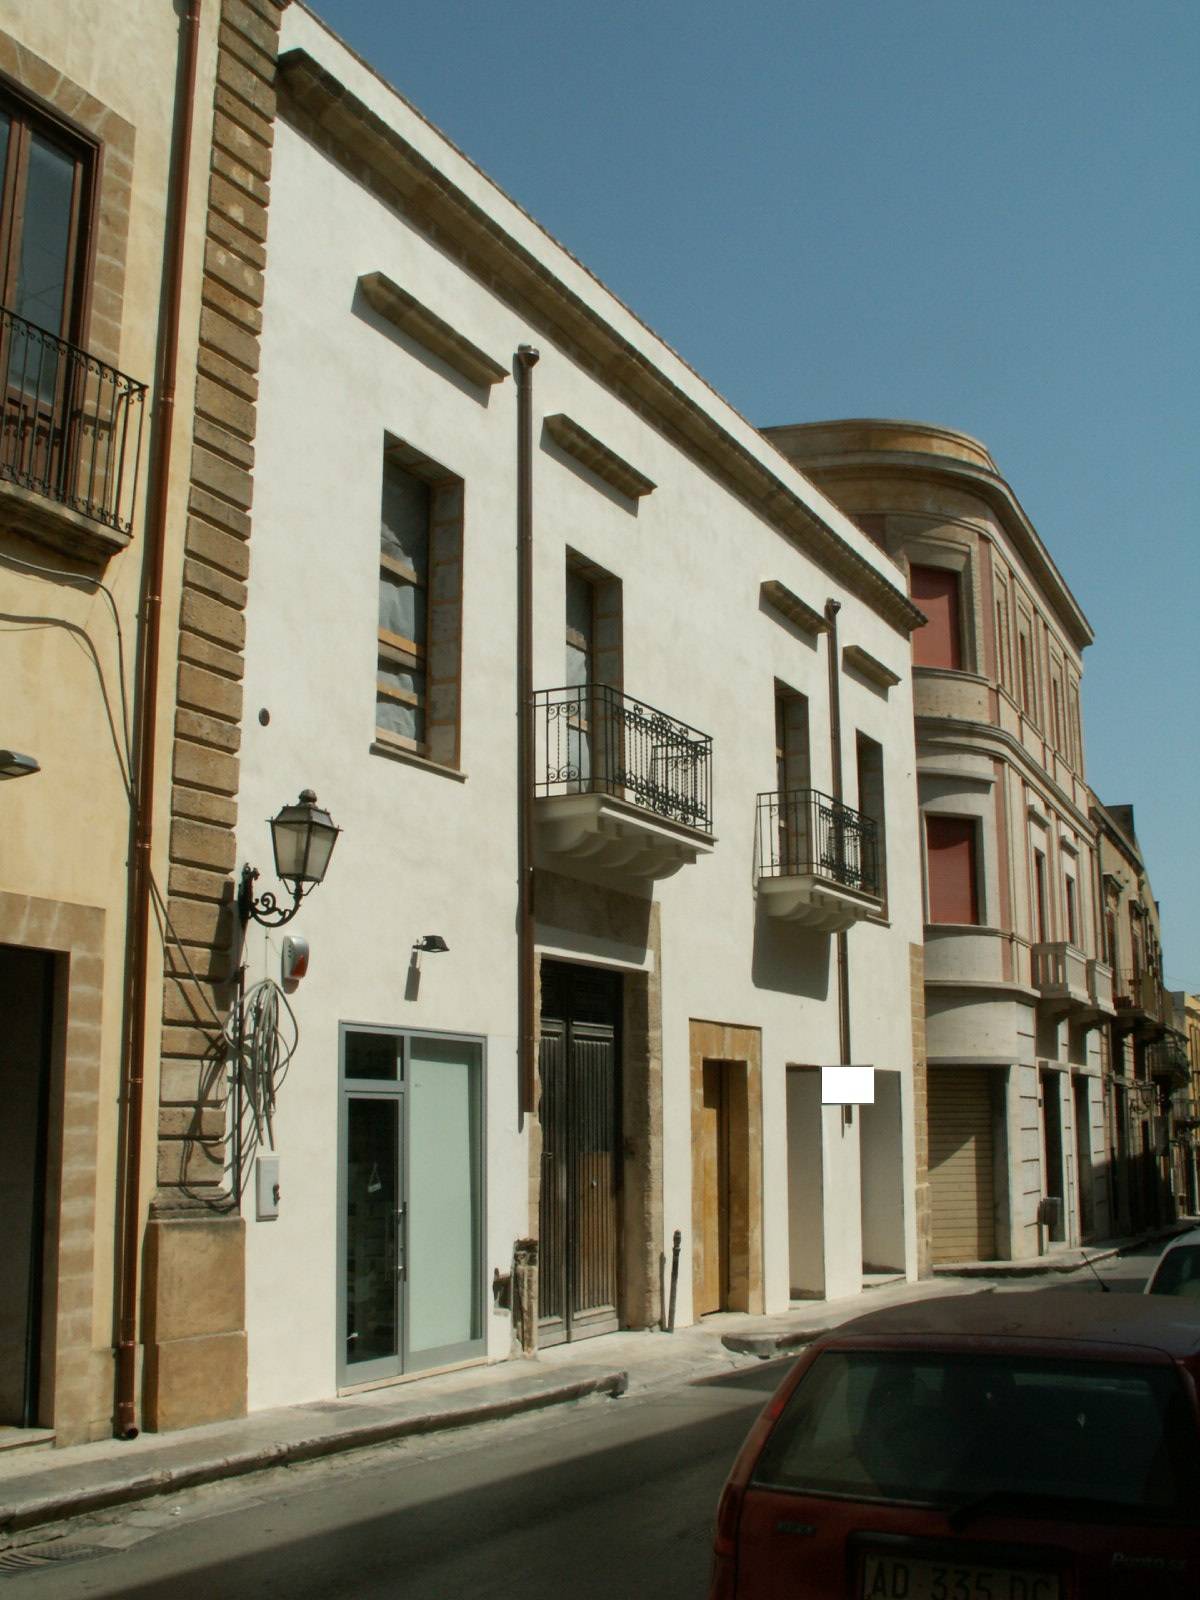 Appartamento in vendita a Castelvetrano, 2 locali, zona Località: CentroStorico, prezzo € 28.000 | PortaleAgenzieImmobiliari.it